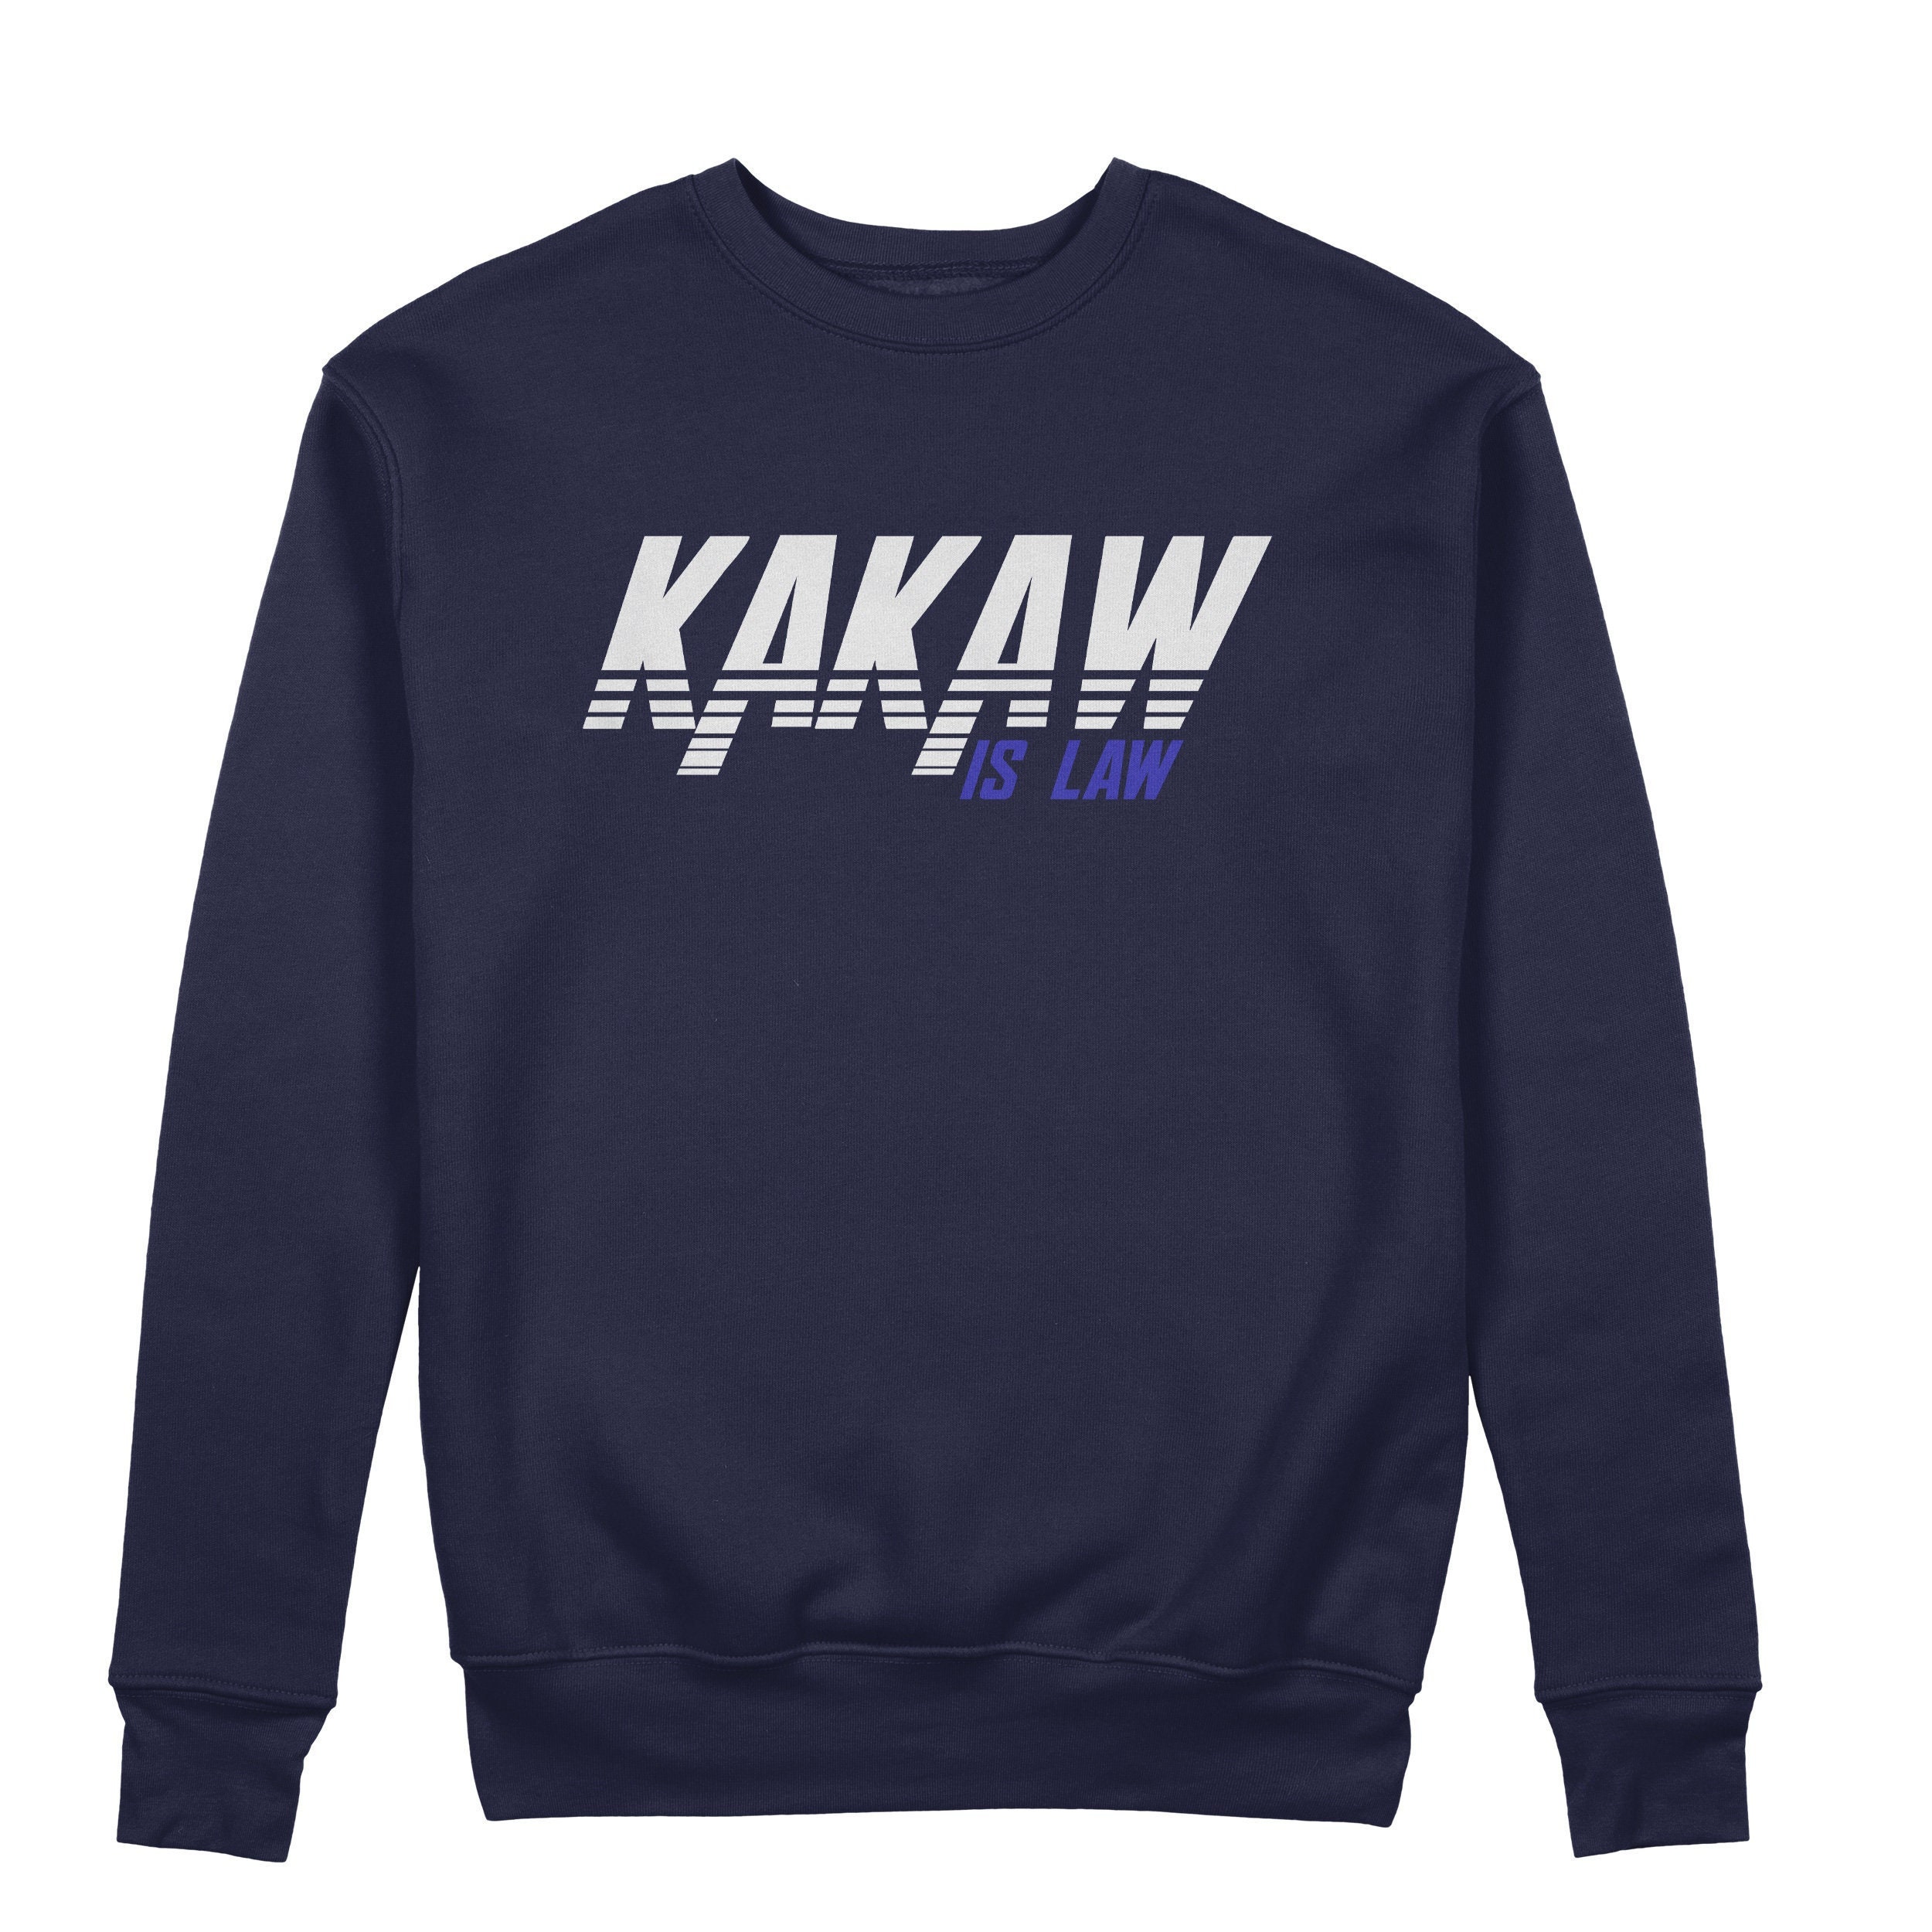 St. Louis Battlehawks Football Ka Kaw shirt, hoodie, sweater, long